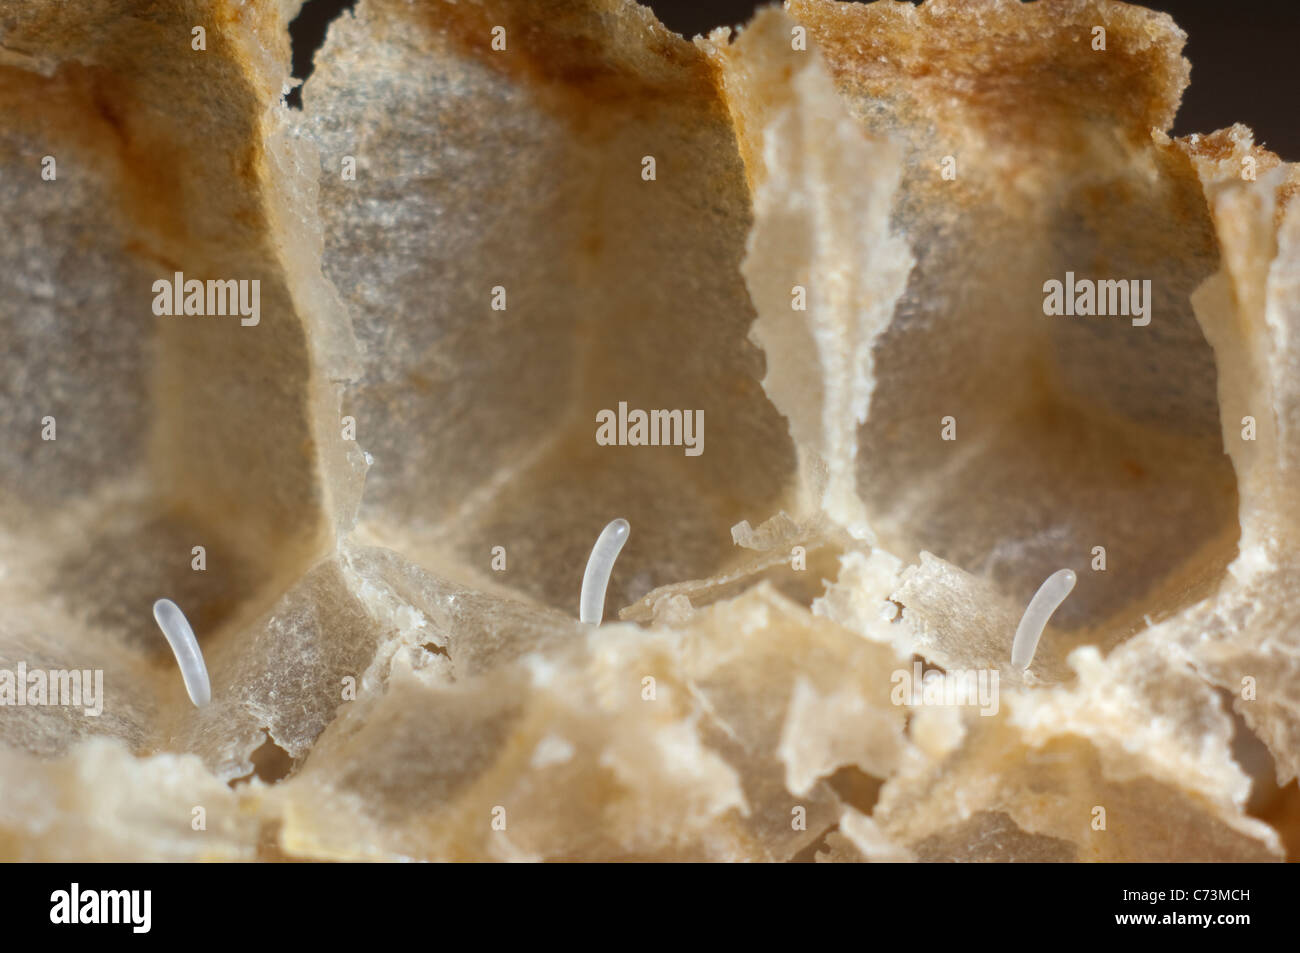 Europäische Honigbiene, westliche Honigbiene (Apis Mellifera, Apis Mellifica). Nahaufnahme von Eiern in den Zellen. Stockfoto